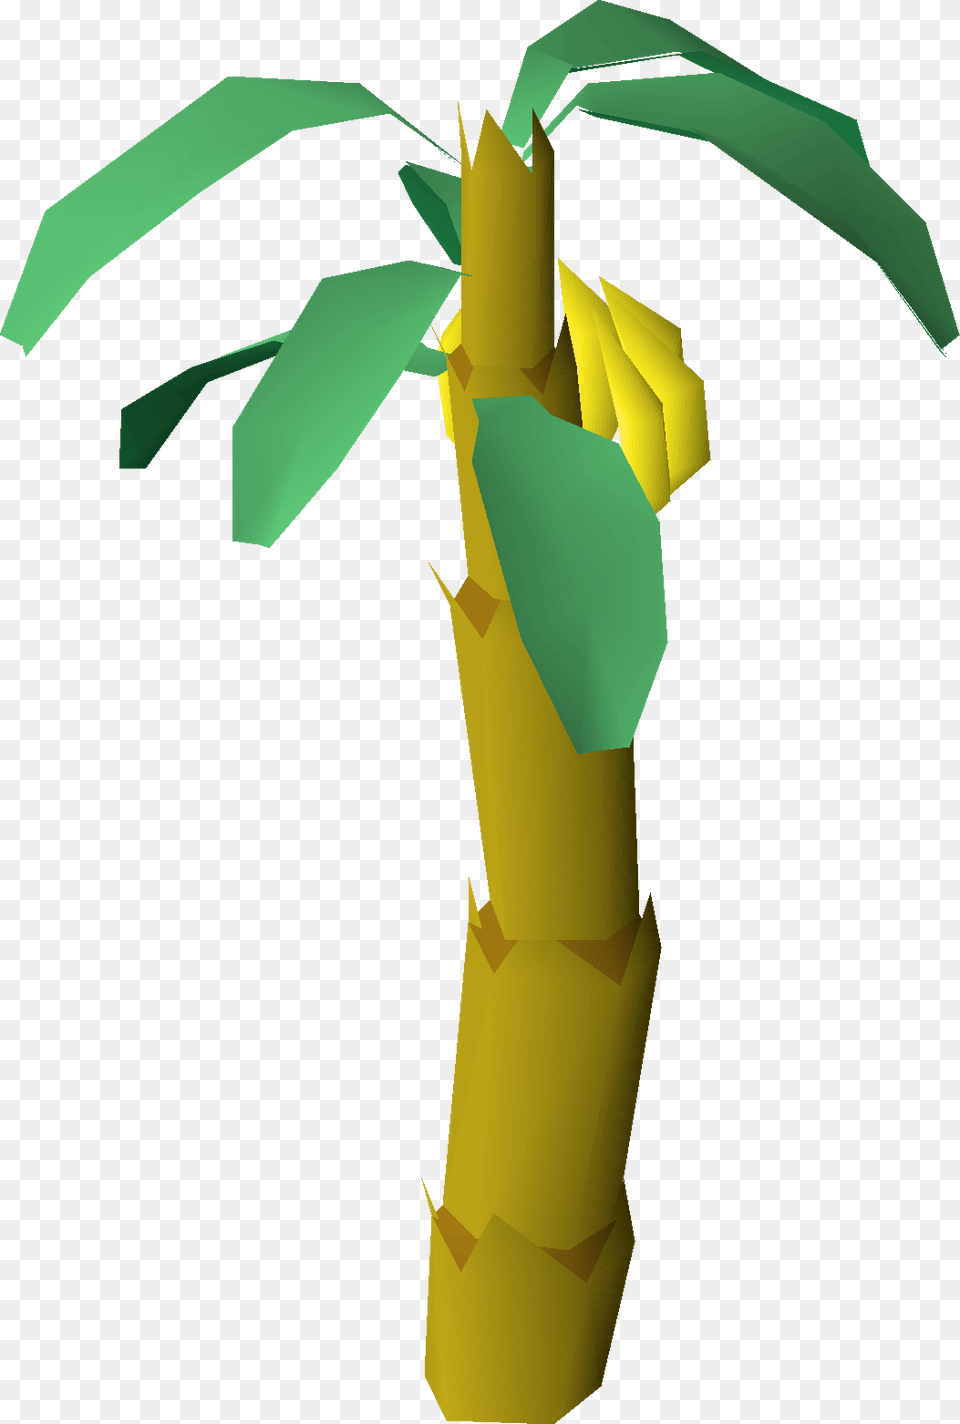 Banana Tree, Bamboo, Bamboo Shoot, Food, Plant Free Png